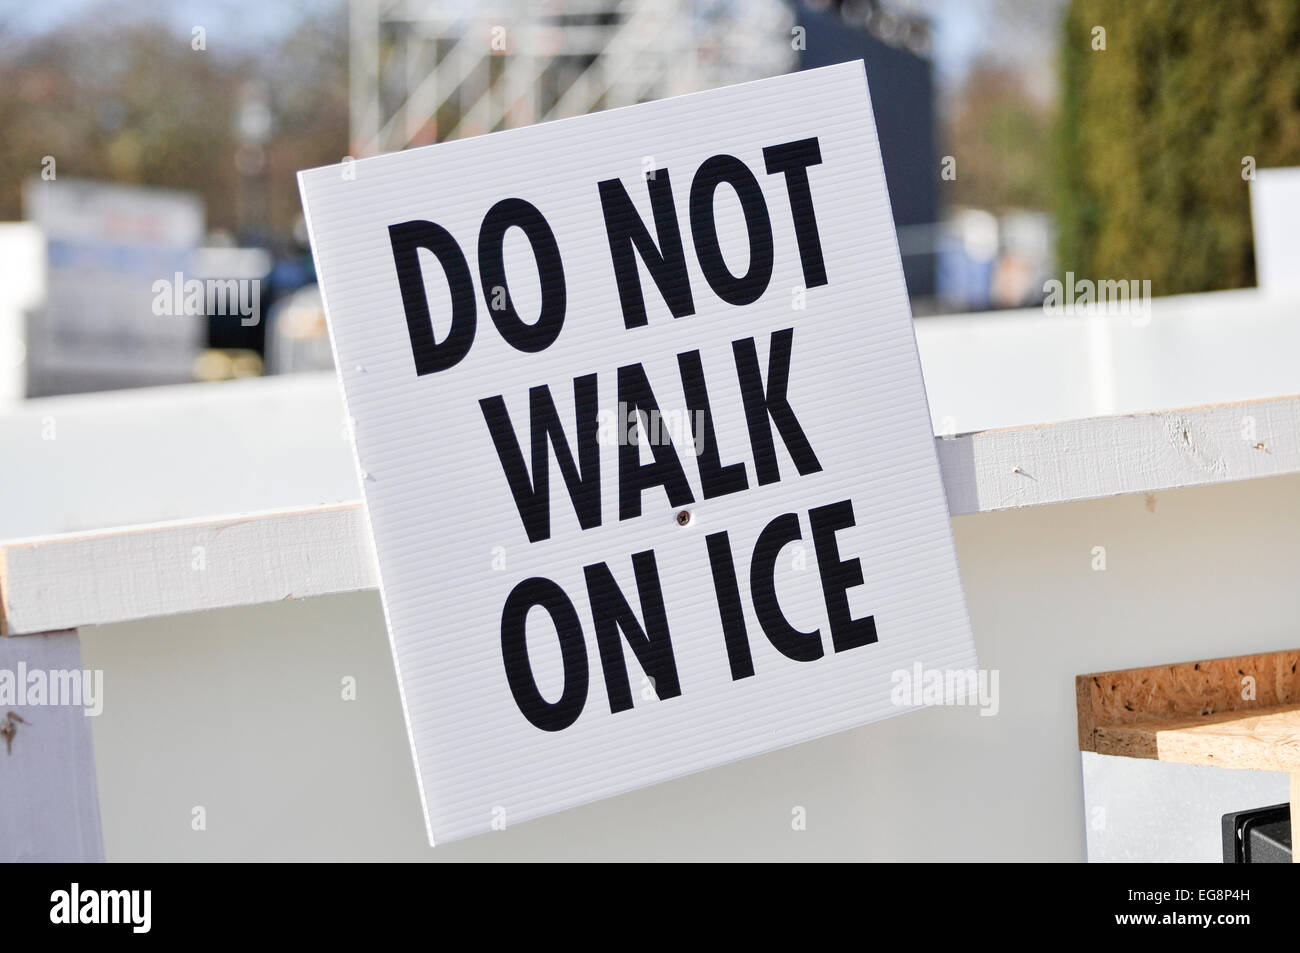 Belfast, Irlande du Nord. 19 févr. 2015 - Sign avertit les gens de ne pas marcher sur la glace. Crédit : Stephen Barnes/Alamy Live News Banque D'Images